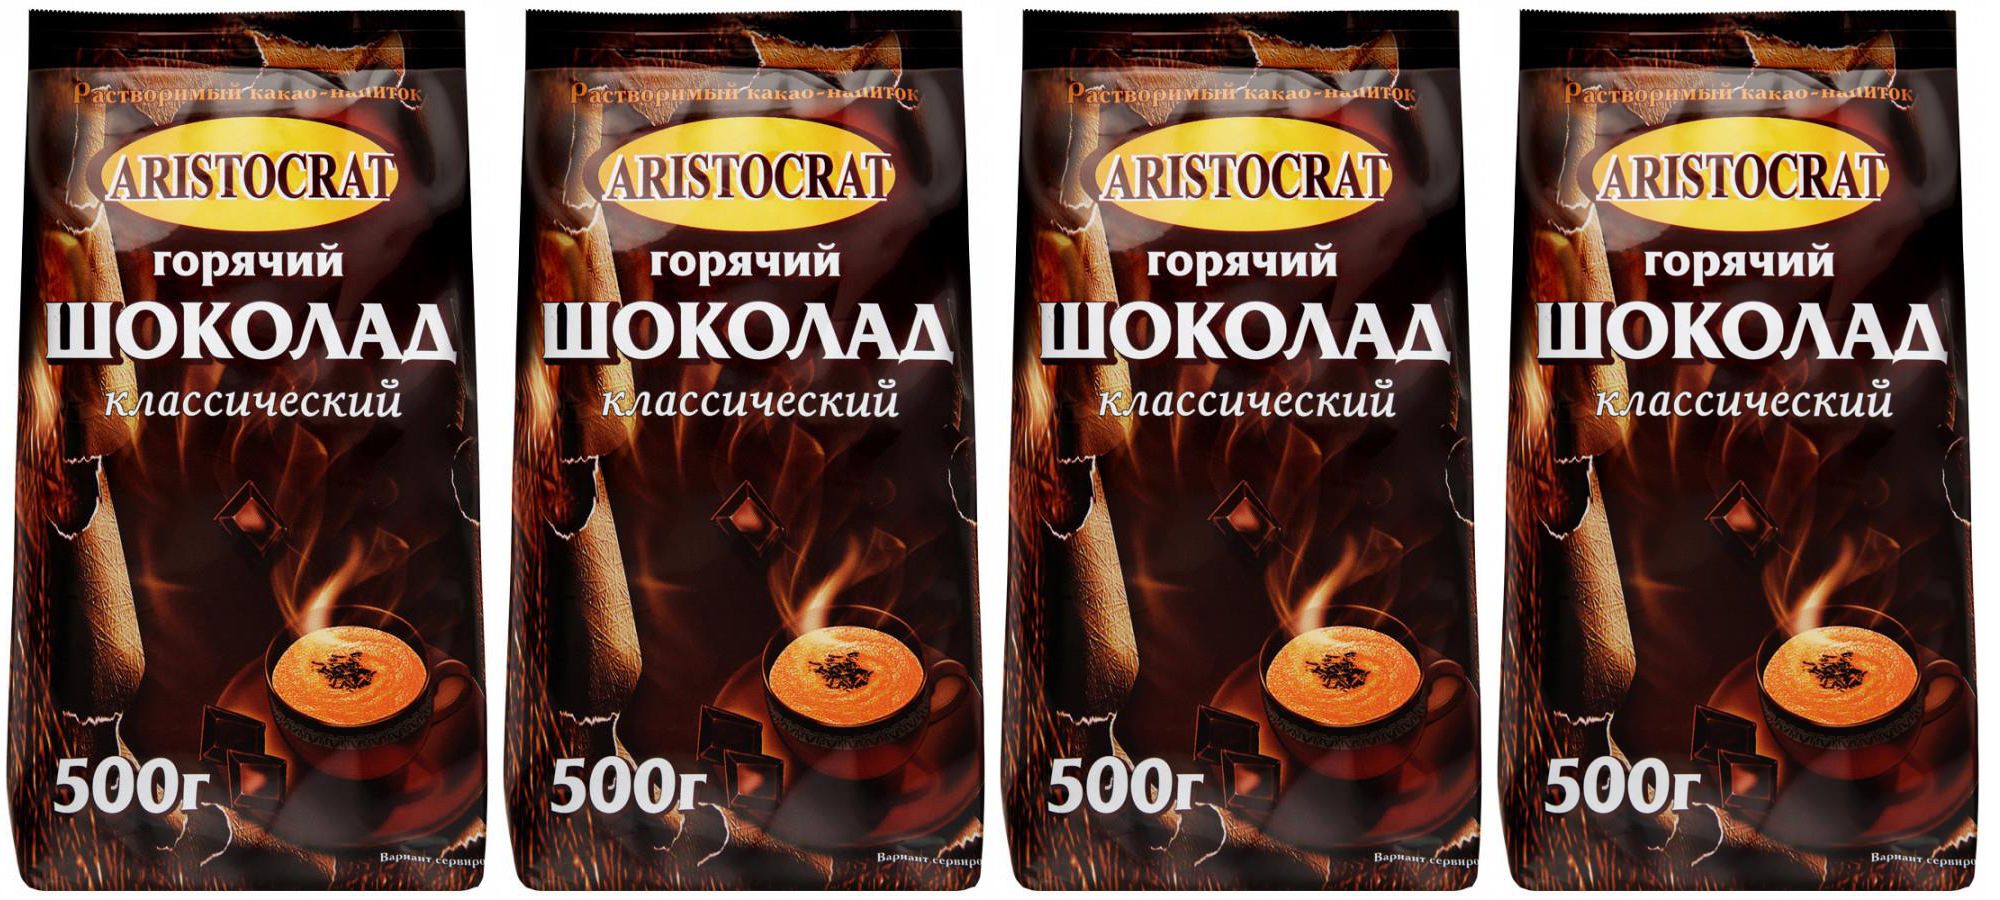 Горячий шоколад Aristocrat Классический растворимый какао-напиток, 500 г х 4 шт